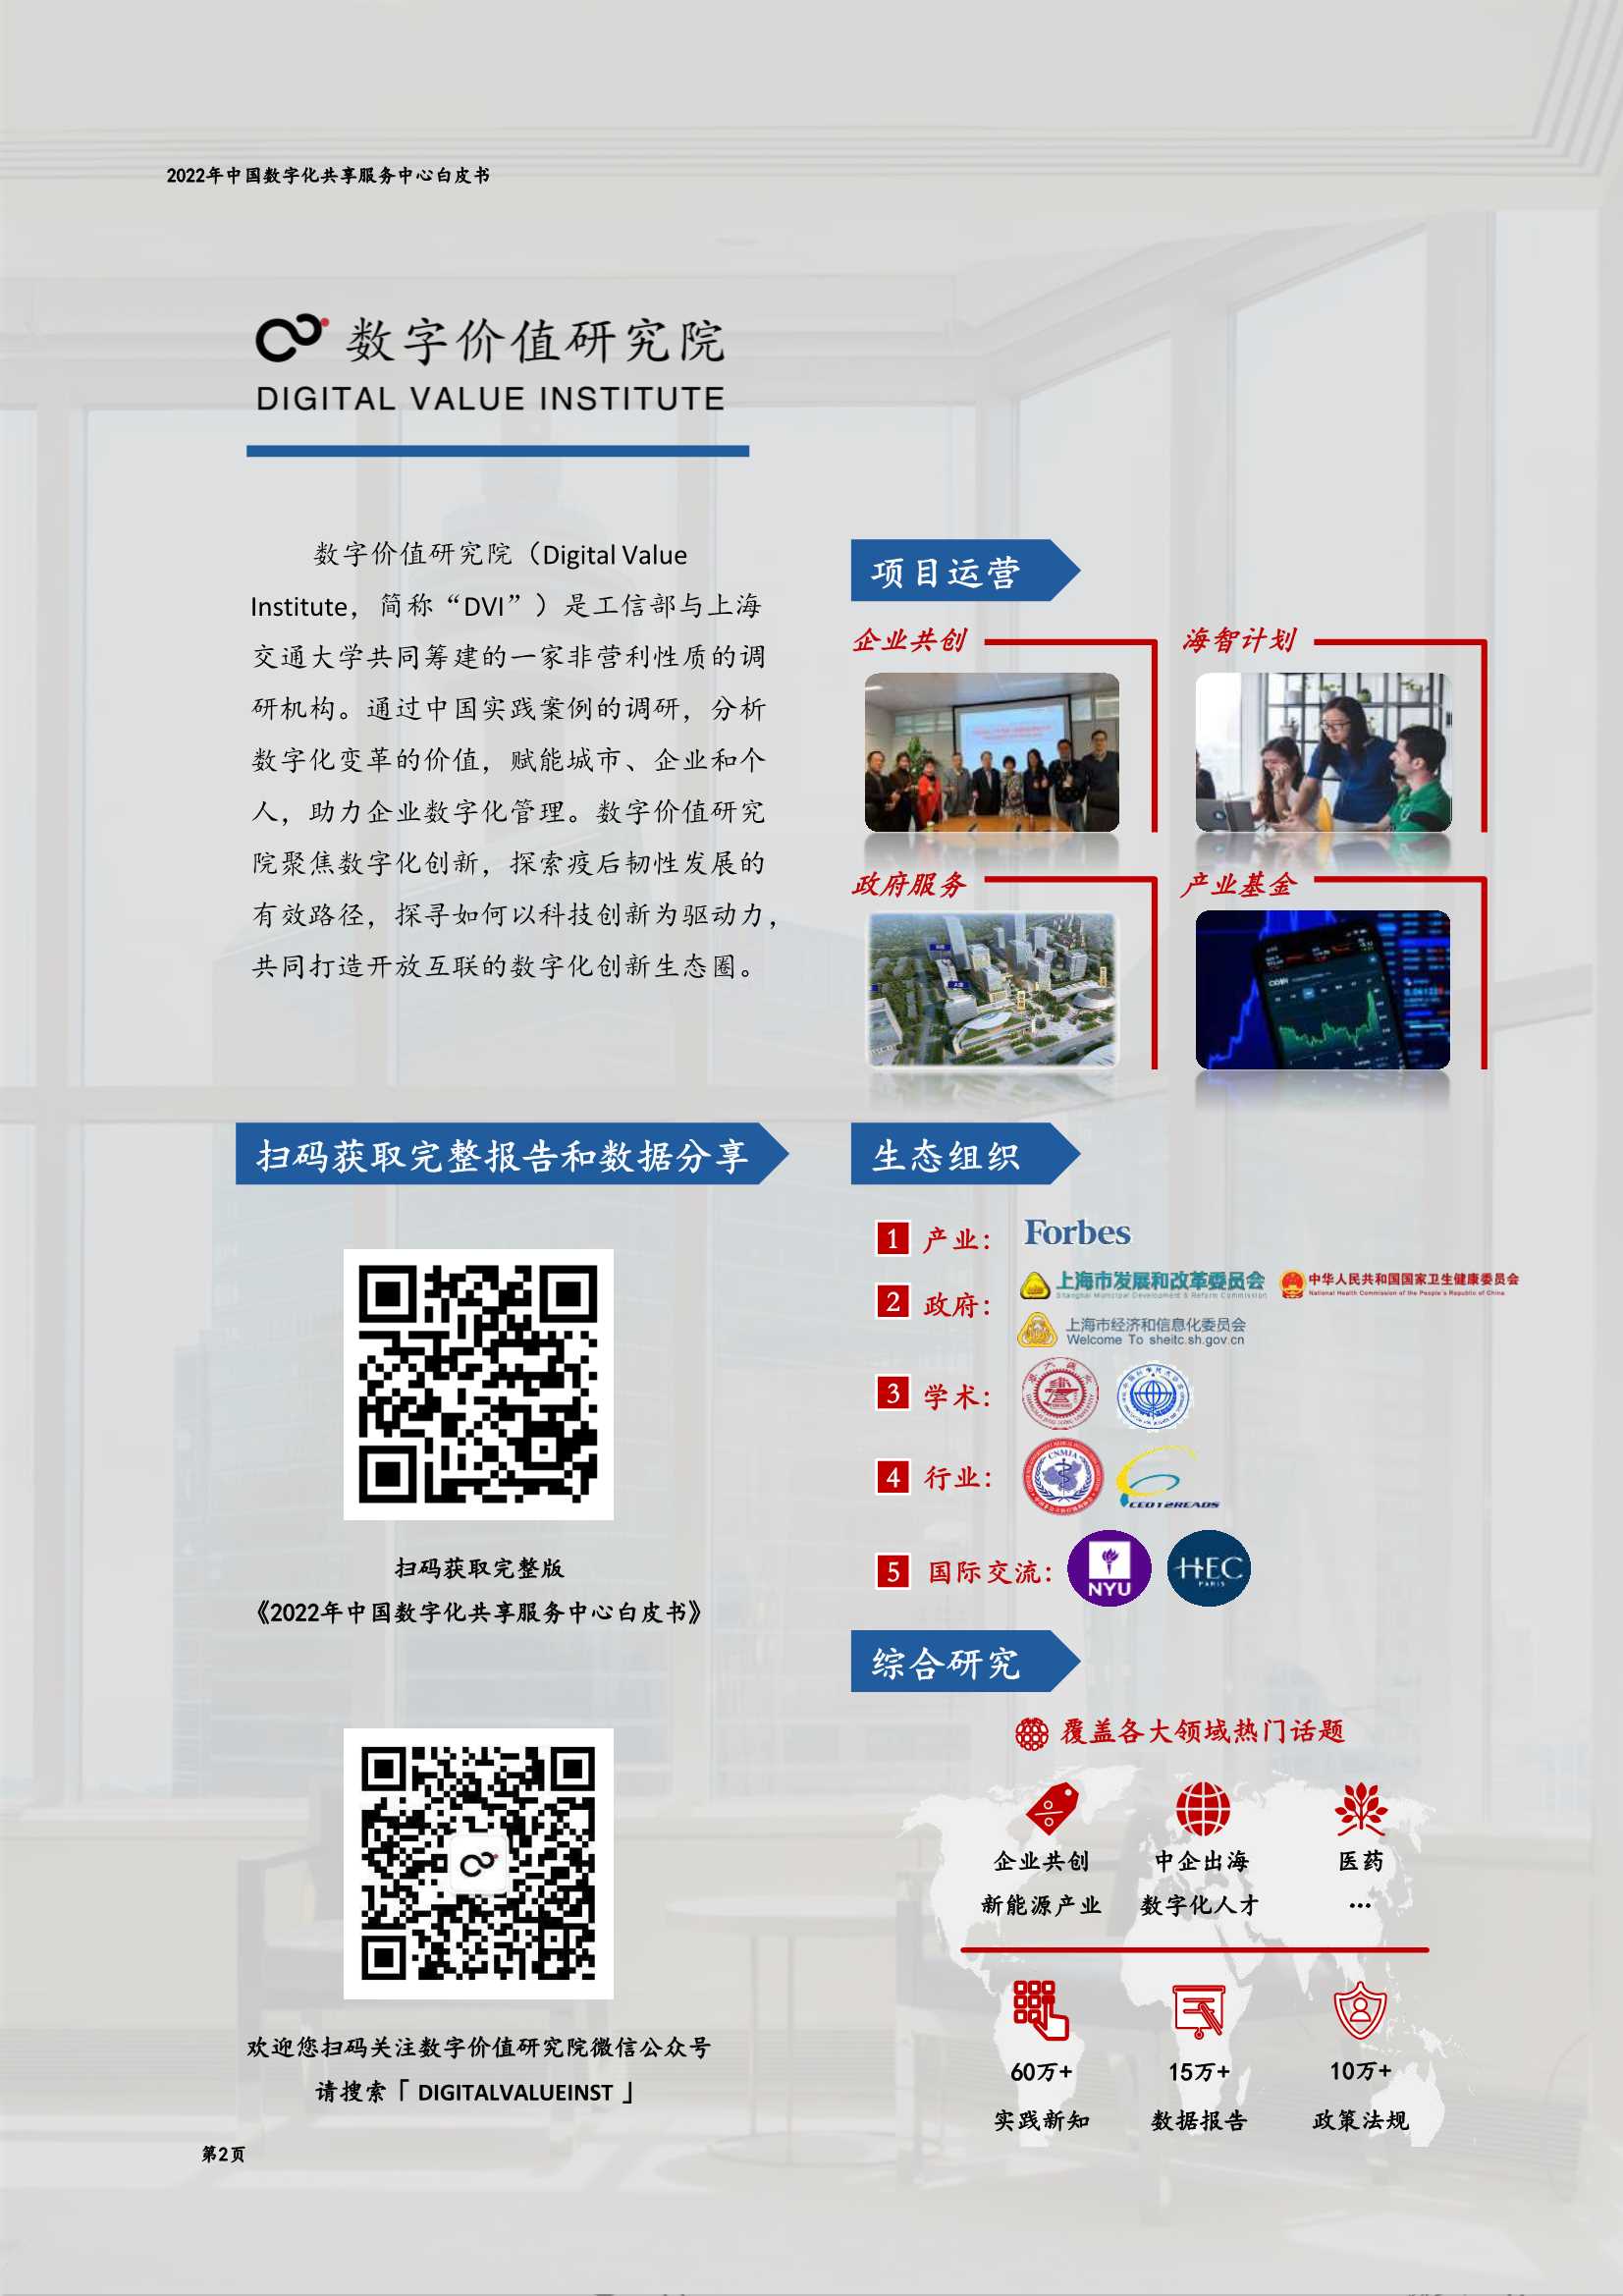 2022年中国数字化共享服务中心白皮书-2022.04-28页